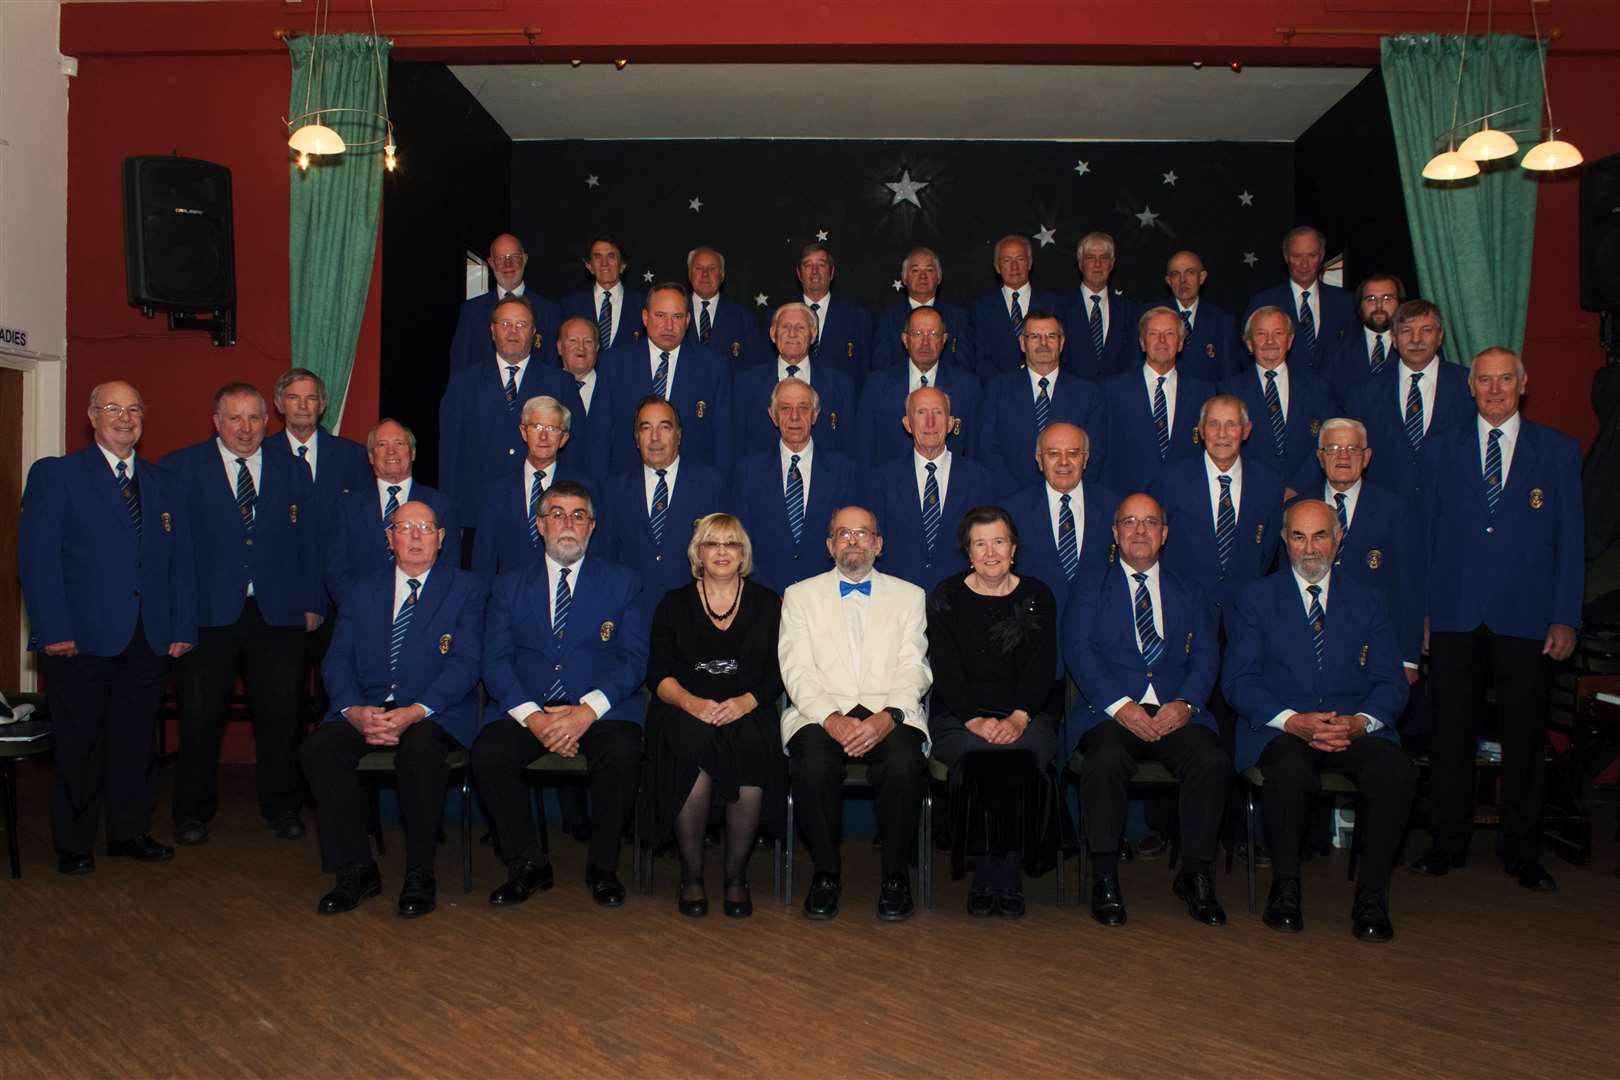 The Snowdown Colliery Choir